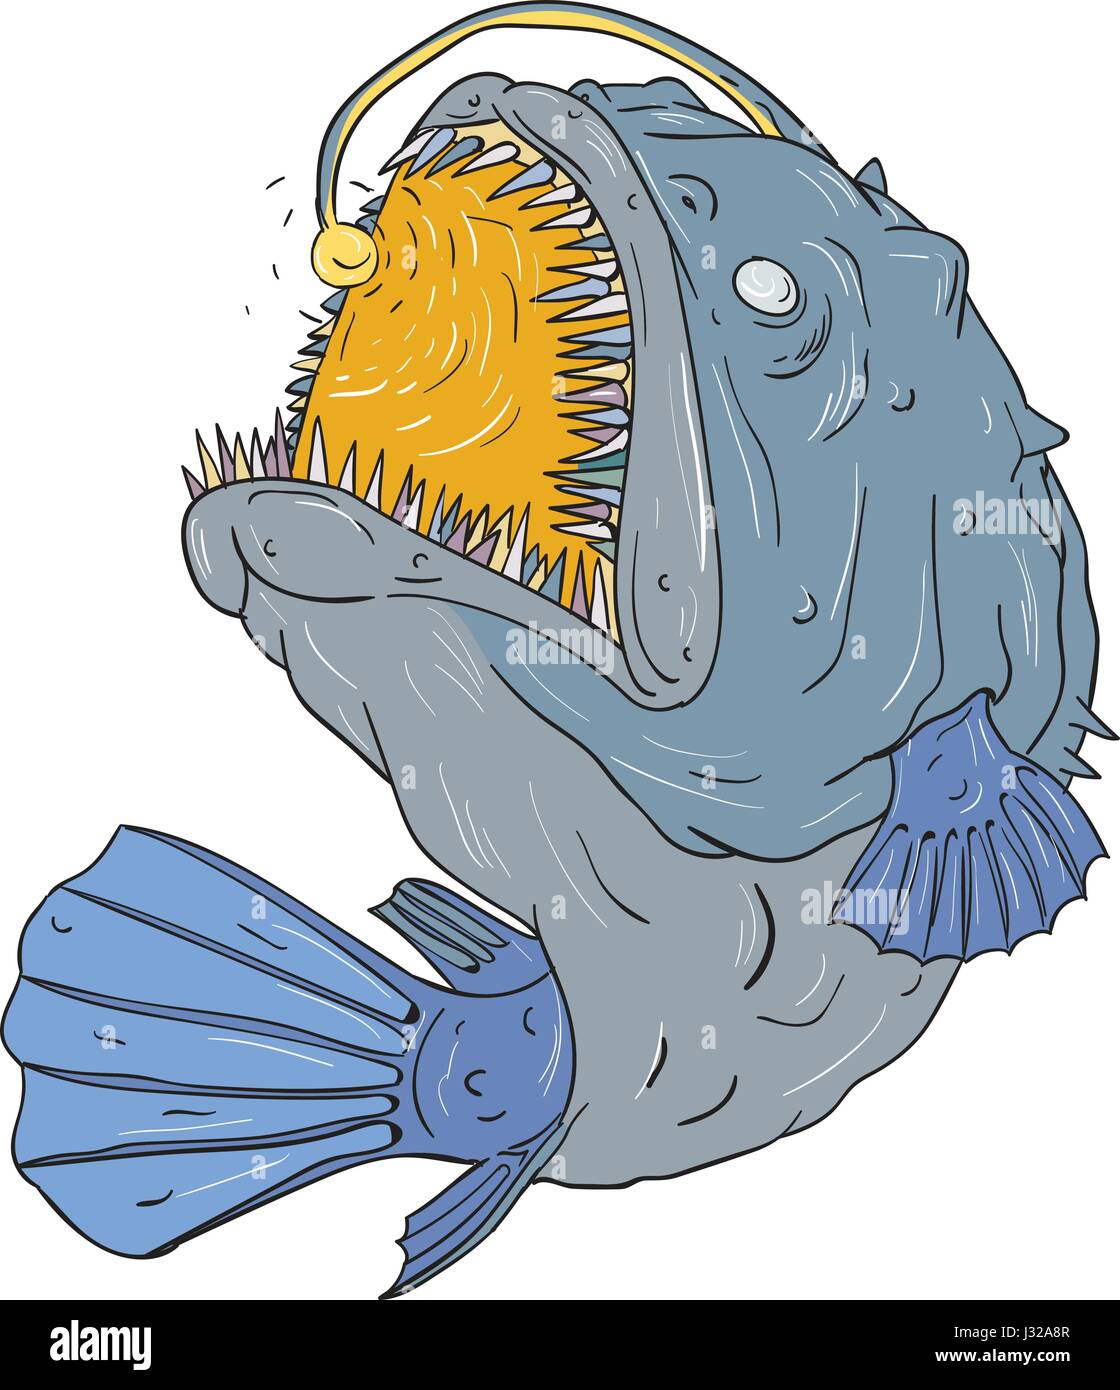 Zeichnung Skizze Stil Illustration ein Seeteufel teleost Bestellung Lophiiformes, die Knochenfische, die für ihre charakteristische Weise der Prädation benannt sind, Stock Vektor